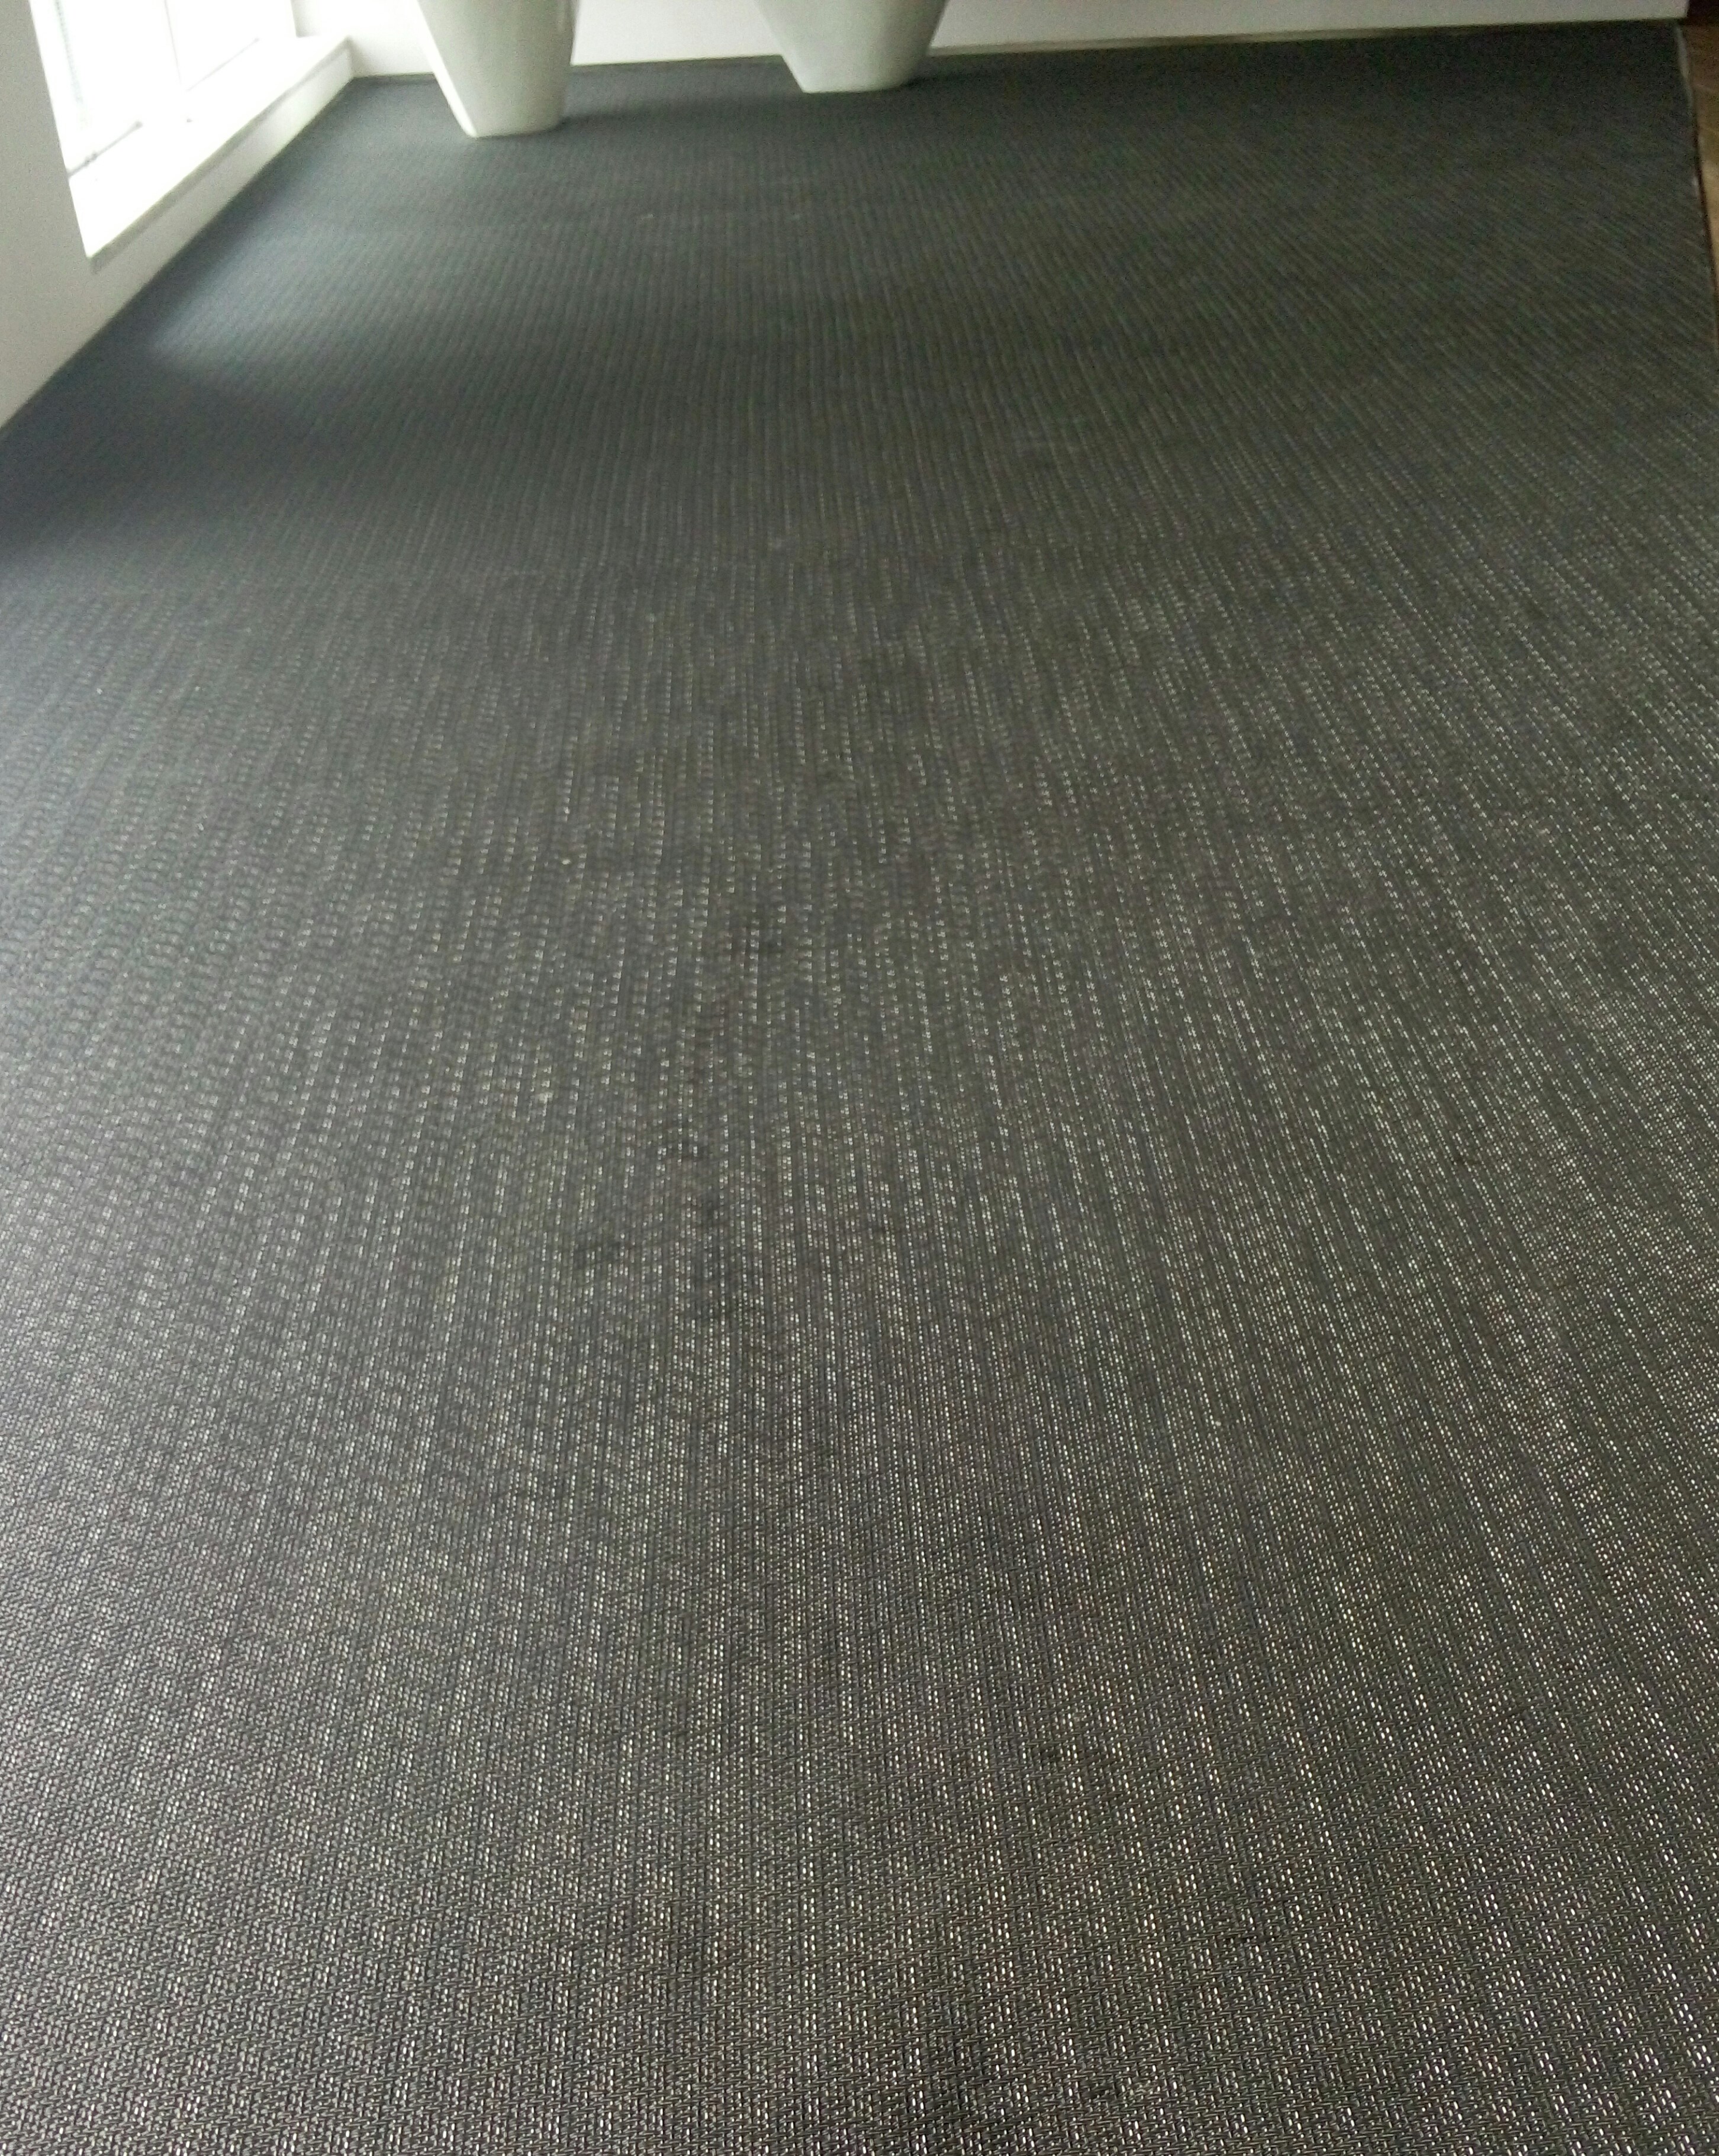 青岛市青岛PVC编织地毯厂家供应青岛PVC编织地毯|青岛草编地毯|青岛地毯批发